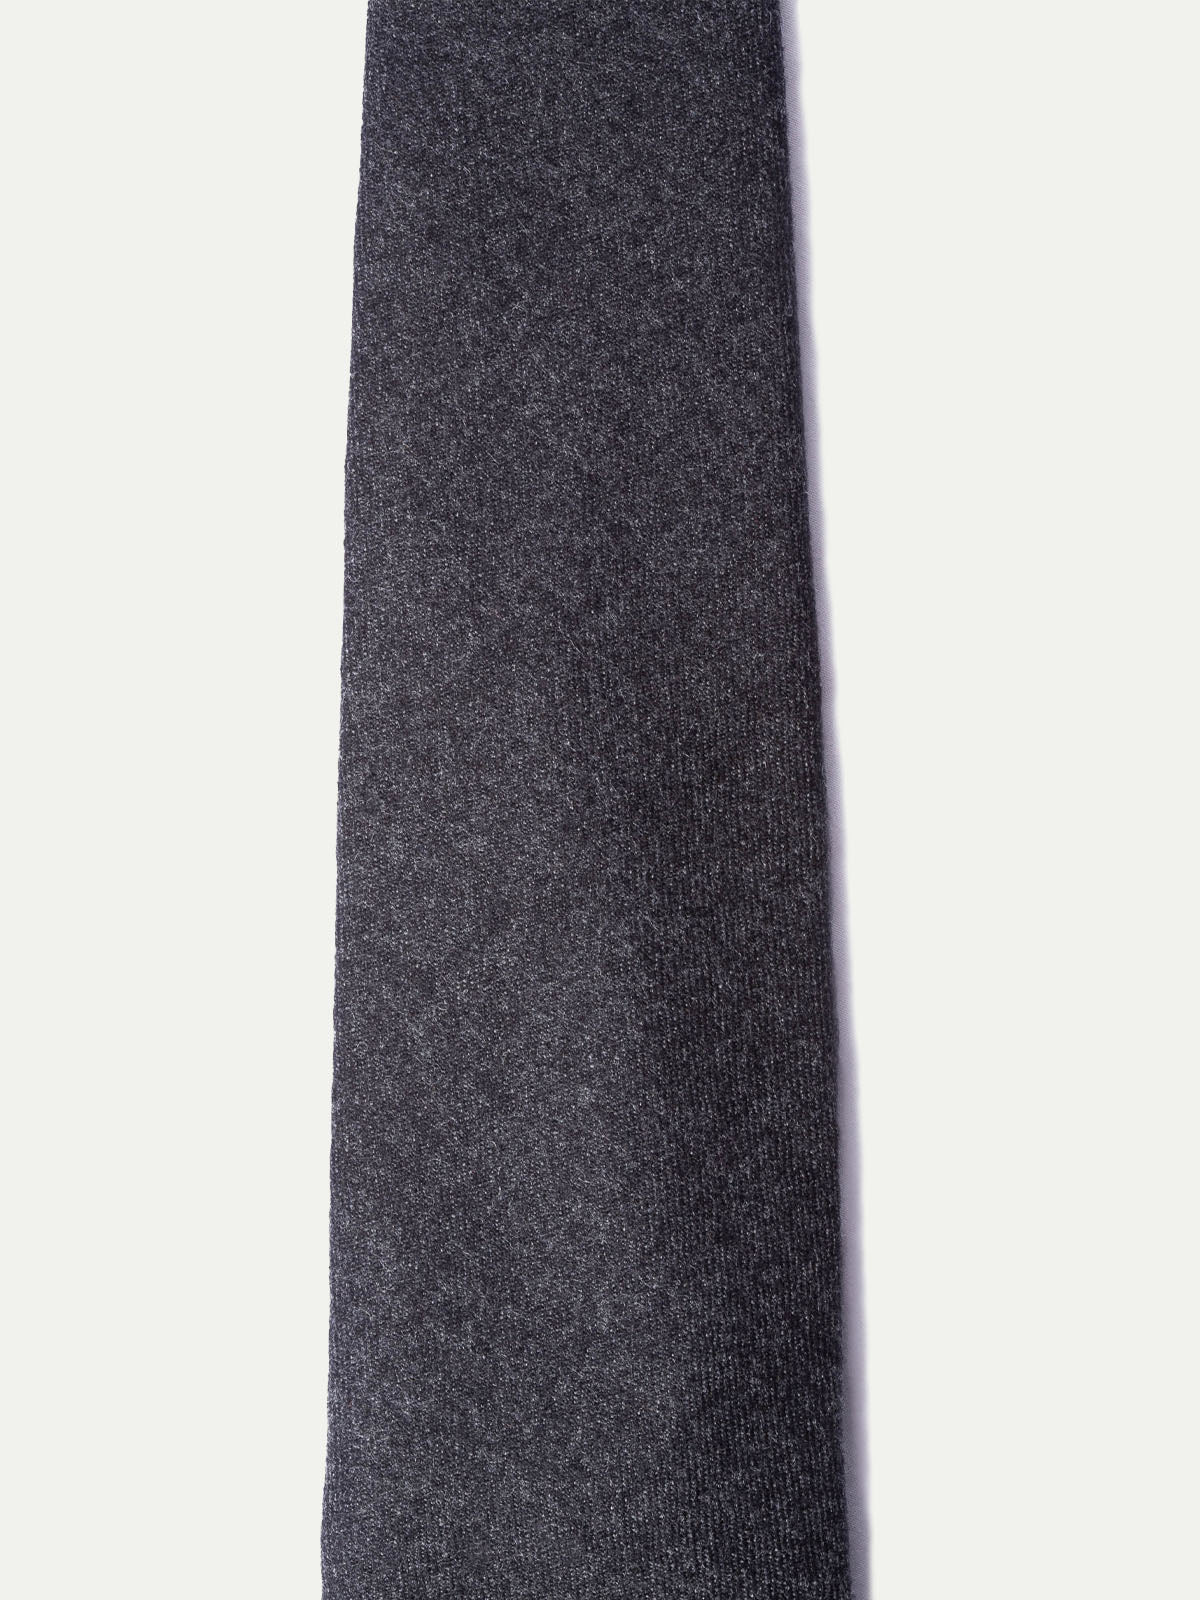 Cravatta in flanella grigio scuro - Fatta a mano in Italia